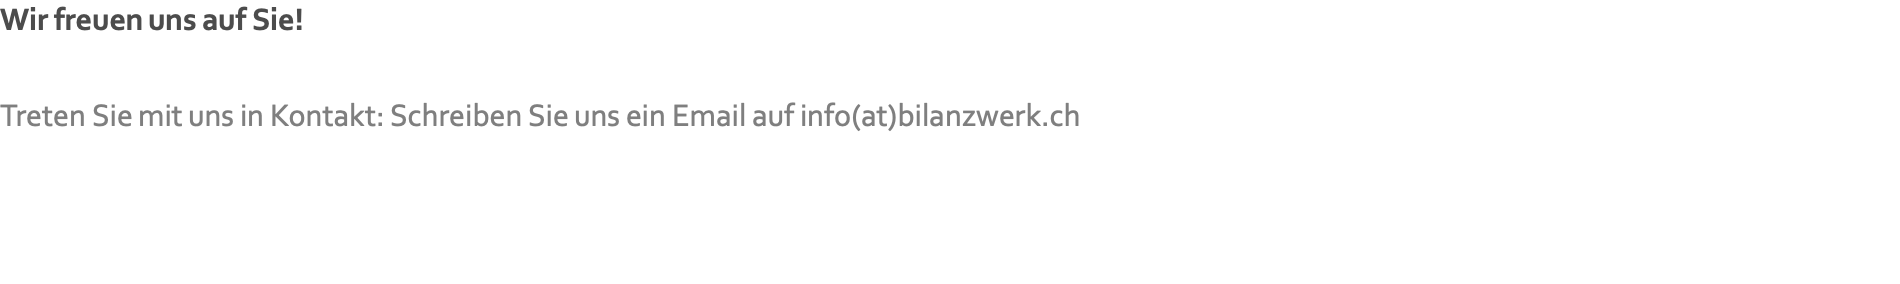 Wir freuen uns auf Sie!   Treten Sie mit uns in Kontakt: Schreiben Sie uns ein Email auf info(at)bilanzwerk.ch